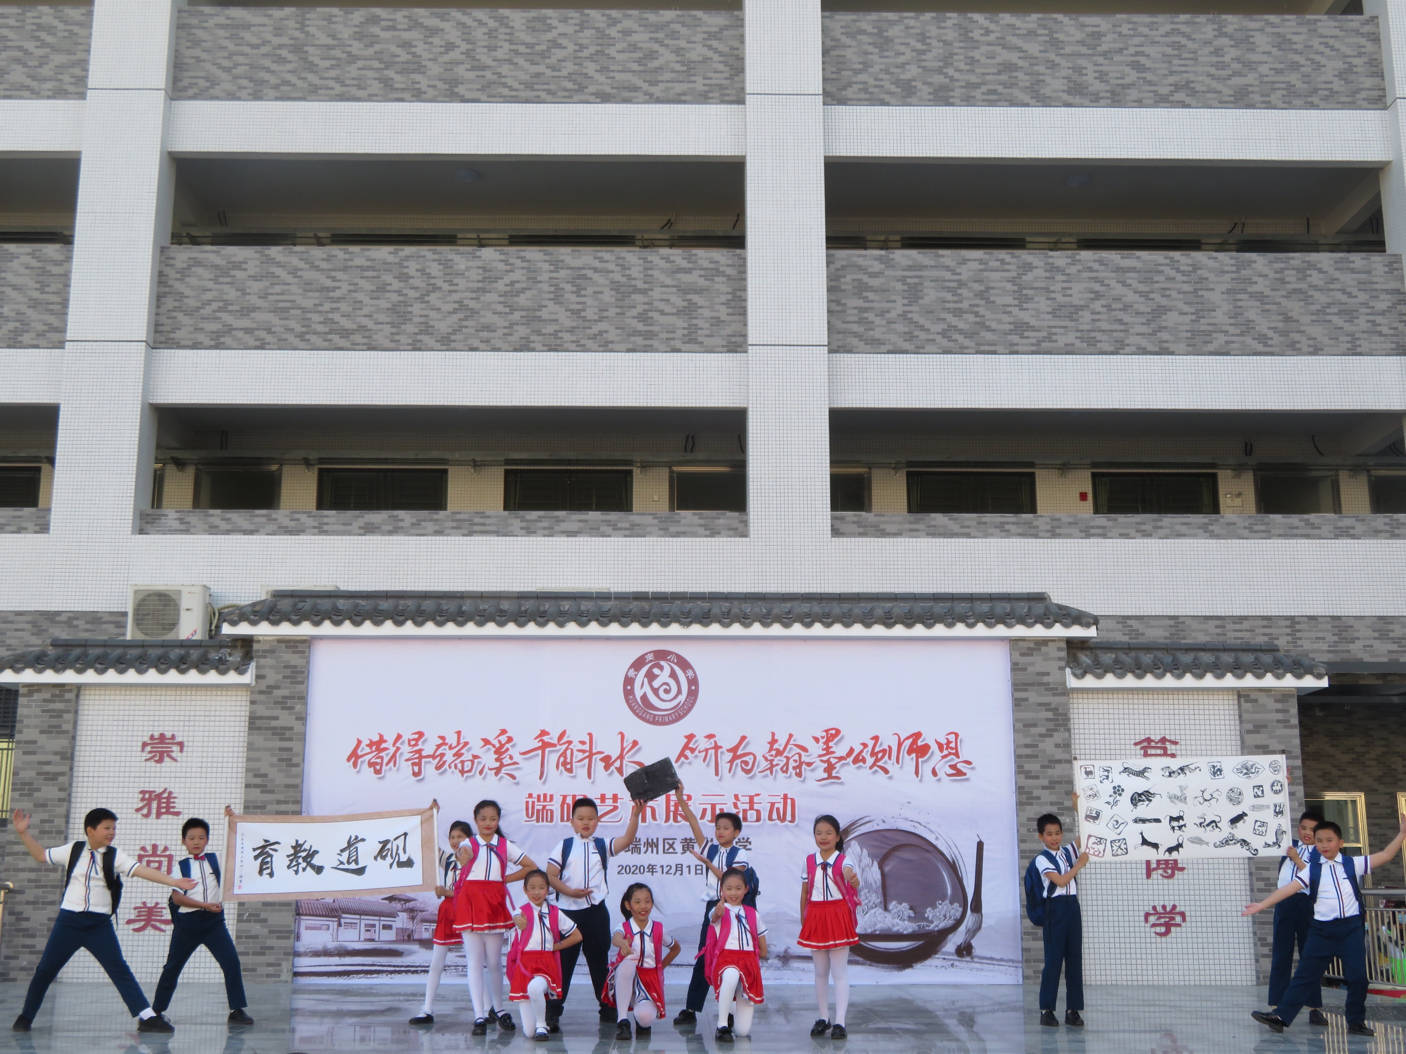 肇庆市端州区黄岗小学举行端砚艺术展示活动